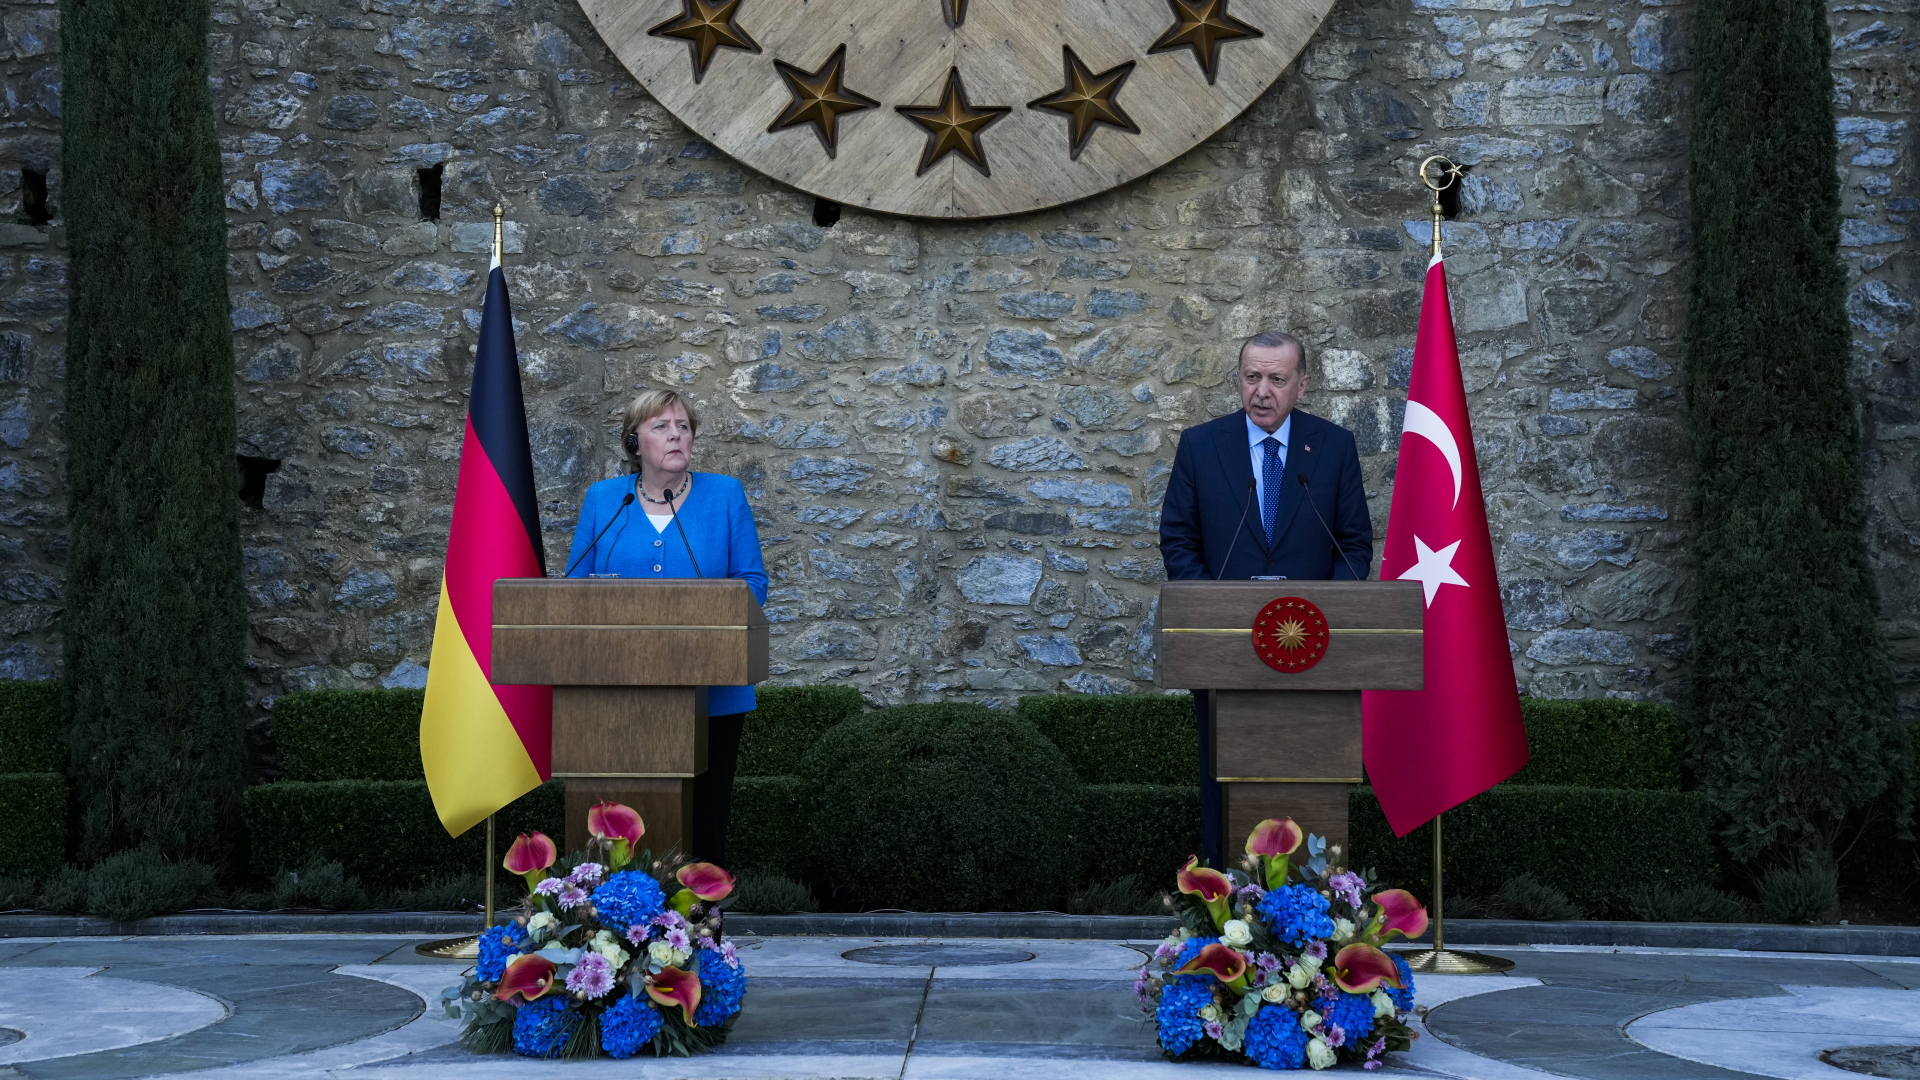 Recep Tayyip Erdogan, Staatspräsident der Türkei, spricht neben Bundeskanzlerin Angela Merkel während einer gemeinsamen Pressekonferenz nach ihrem Treffen in Istanbul.